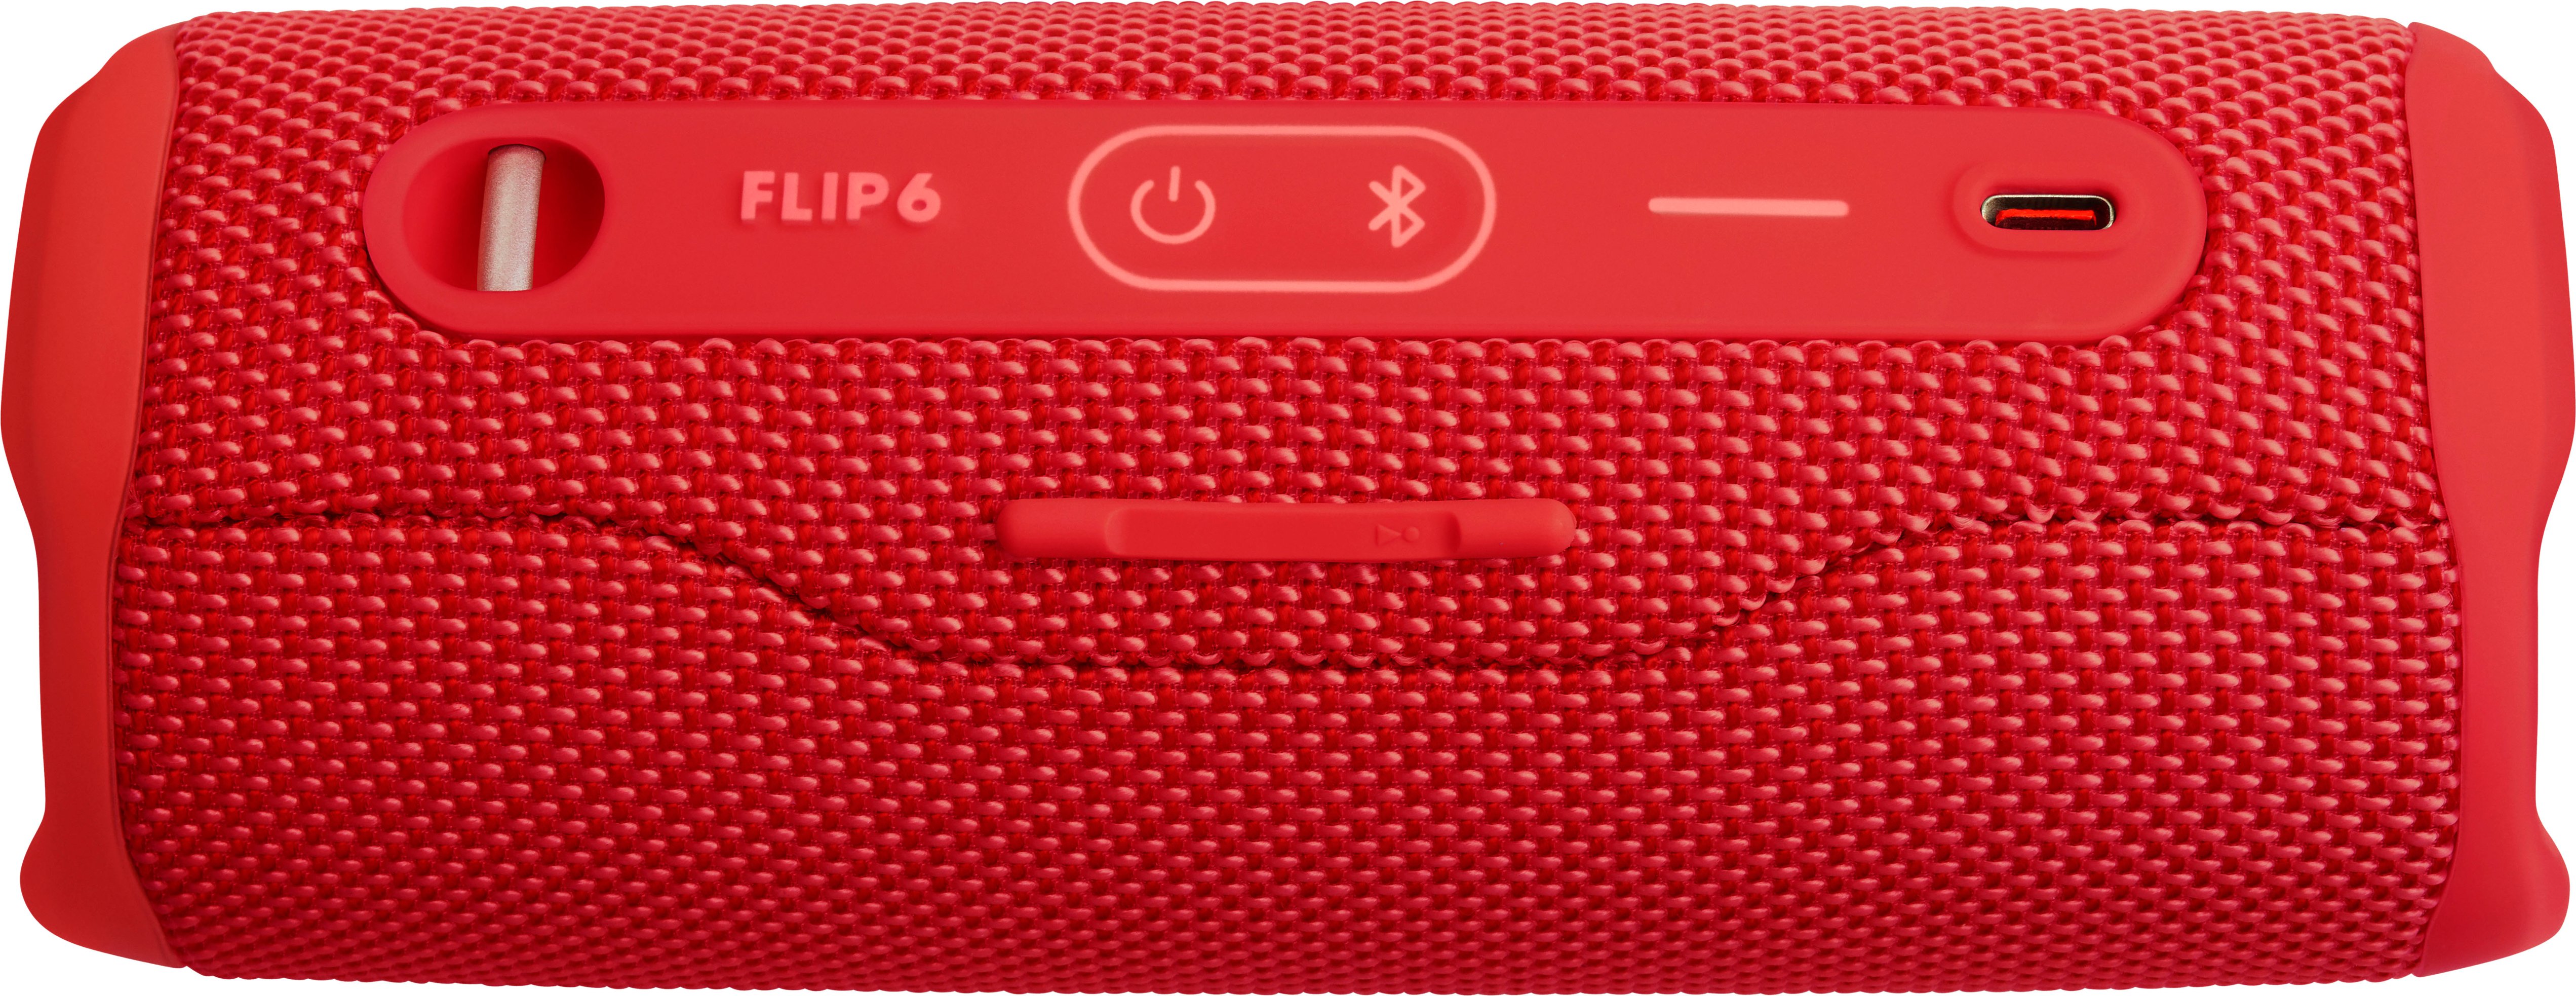 JBL FLIP6 Portable - Red Speaker Best Waterproof JBLFLIP6REDAM Buy